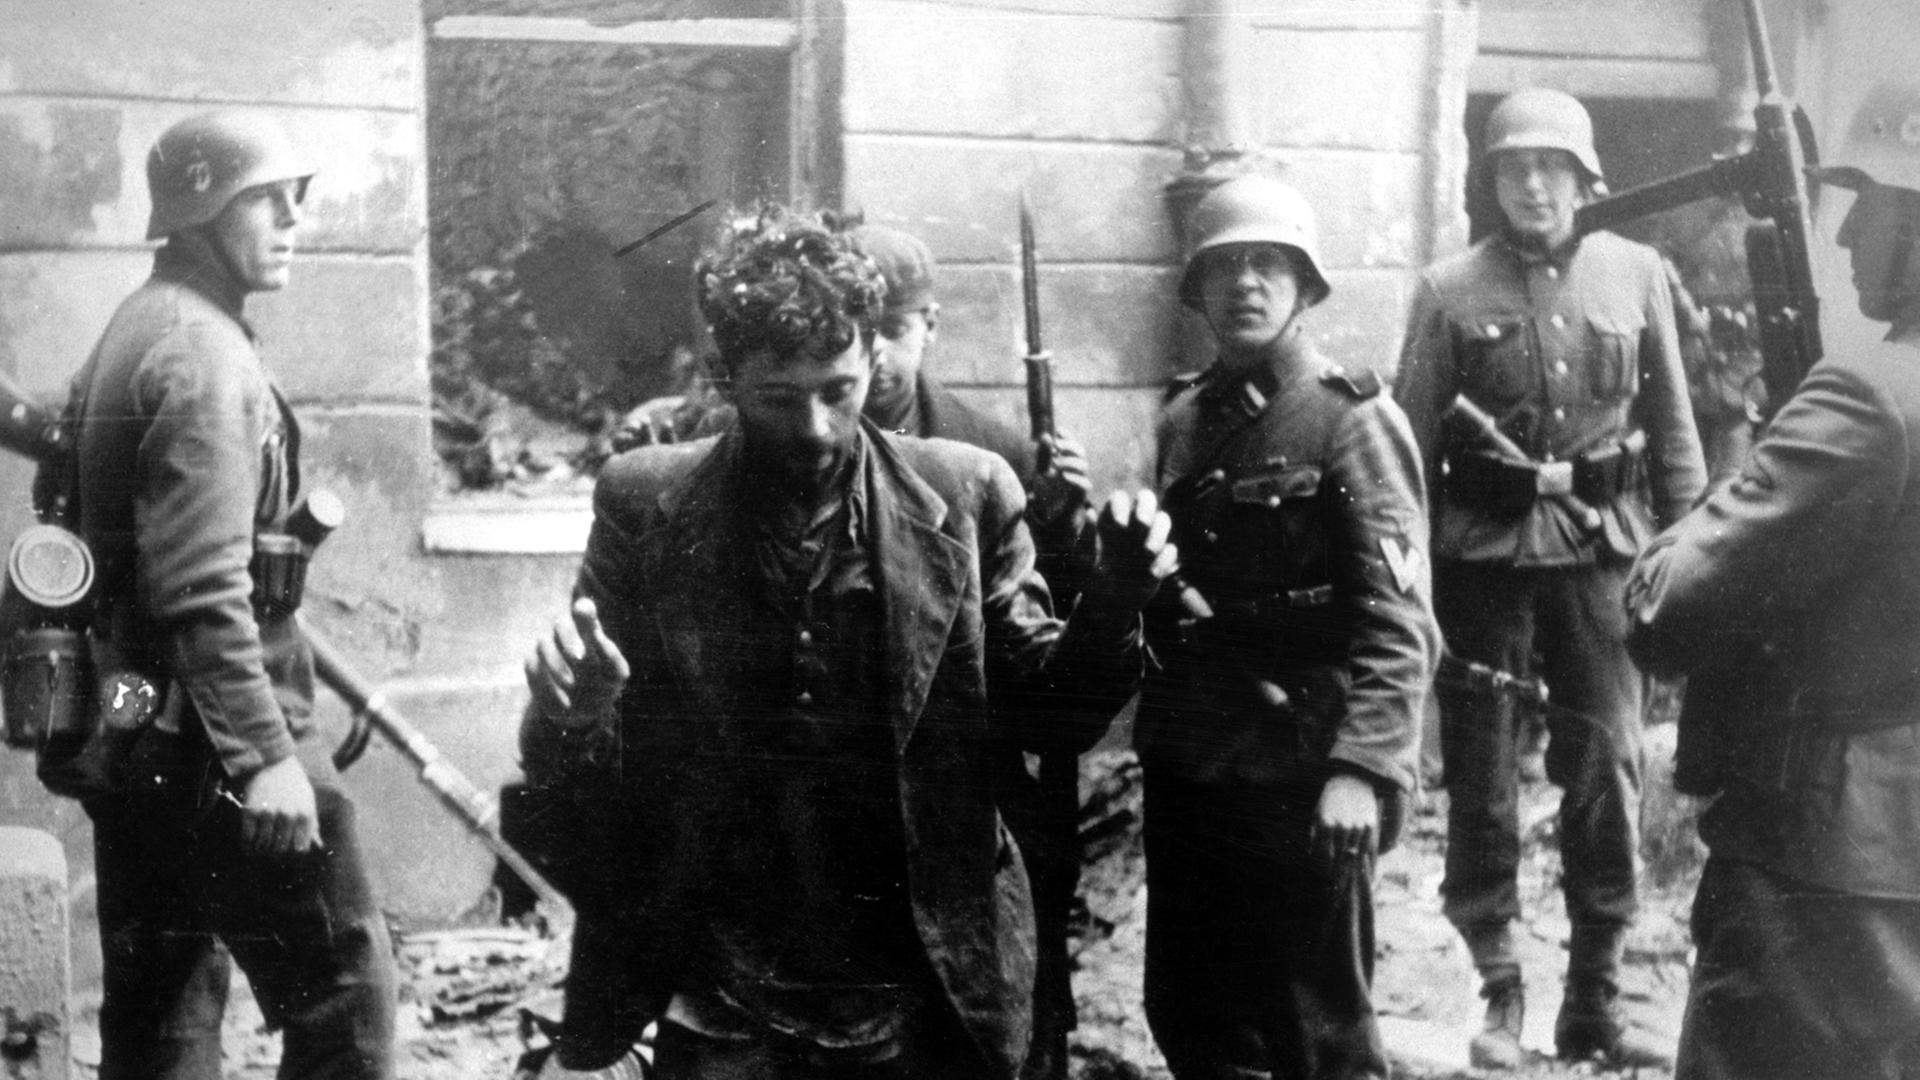 Zwei Juden, die sich in einem Haus versteckt hatten, werden von SS-Soldaten gefangen genommen. Die Aufnahme entstand während des Warschauer Ghetto-Aufstands, der vom 19. April 1943 bis zu seiner blutigen Niederschlagung am 16. Mai 1943 dauerte. Die Nationalsozialisten hatten ein Jahr nach der Besetzung Polens im November 1940 in Warschau ein Ghetto errichtet und dorthin annähernd eine halbe Million Juden verschleppt. Zwischen Juli und September 1942 wurden 300 000 Opfer in den Todeslagern, die meisten in Treblinka, ermordet. Als am 19. April 1943 die SS mit der Verschleppung der restlichen 60 000 Ghetto-Einwohner begann, leisteten mehrere hundert militärisch organisierte Juden bewaffneten Widerstand. Bei den Kämpfen wurden etwa 14 000 jüdische Aufständische getötet.